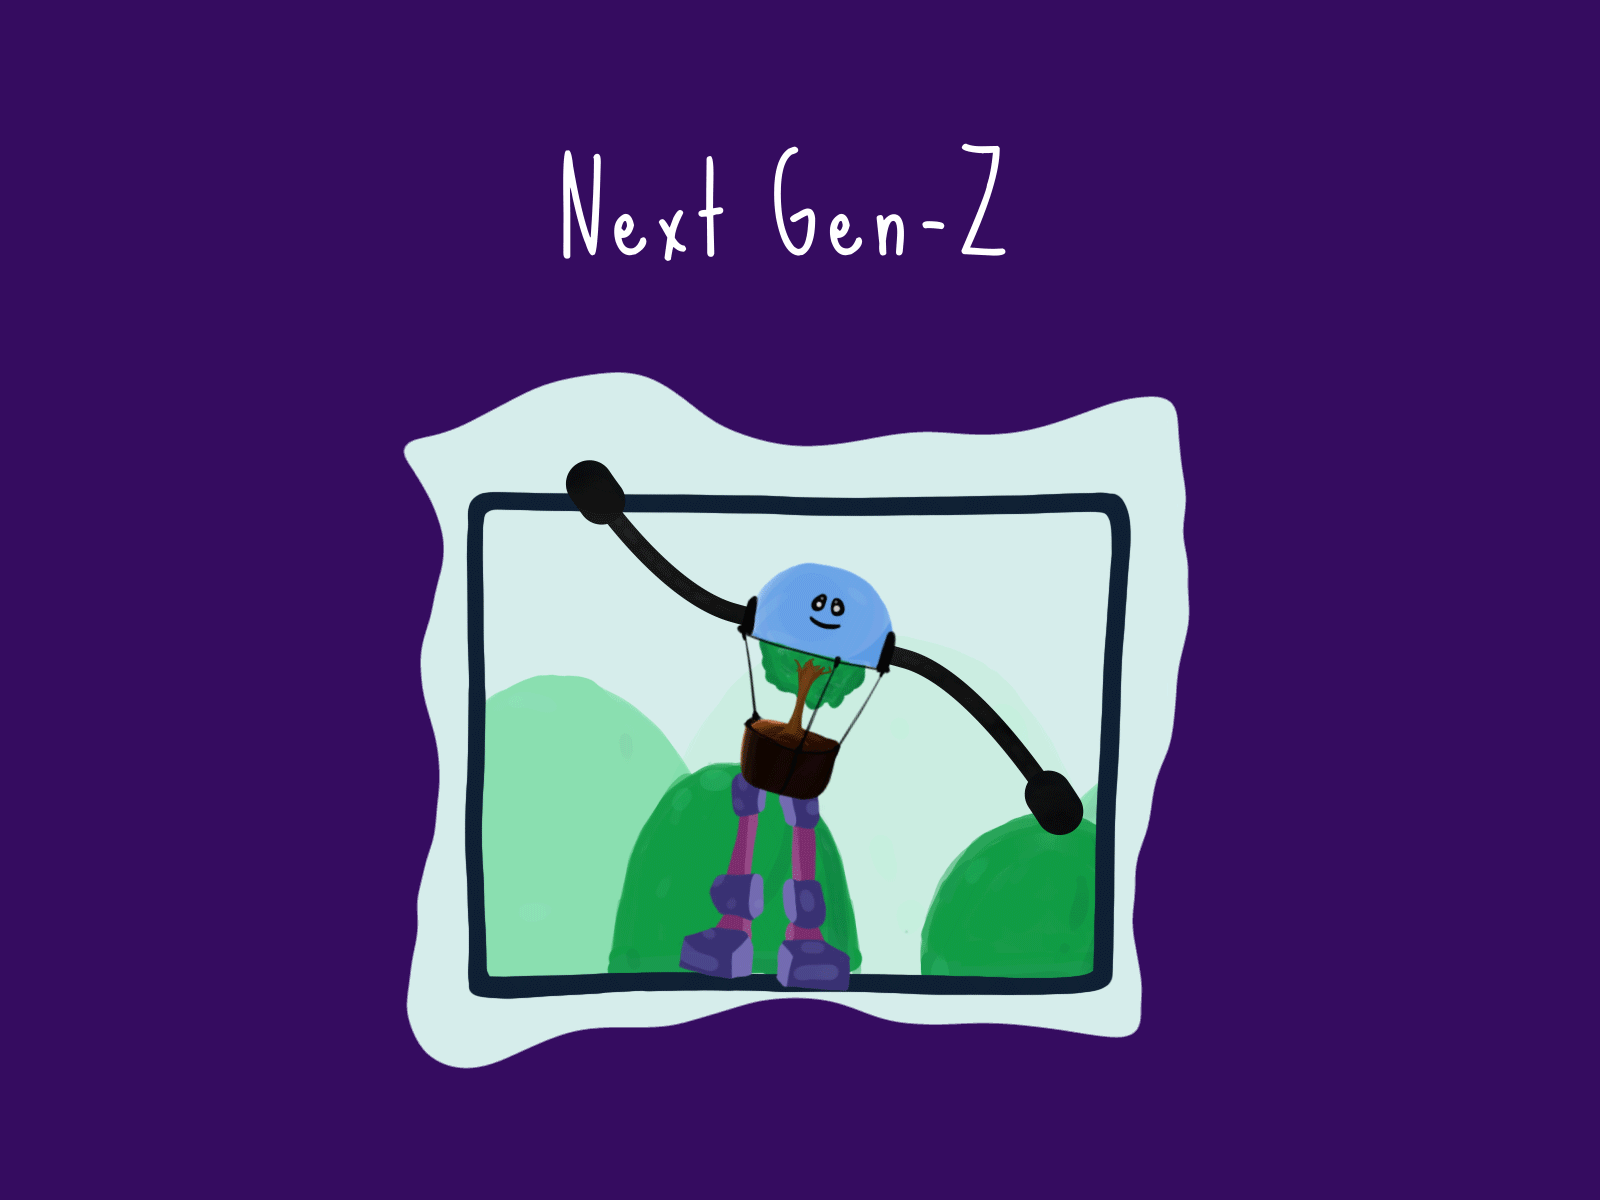 Next Gen-Z animation design